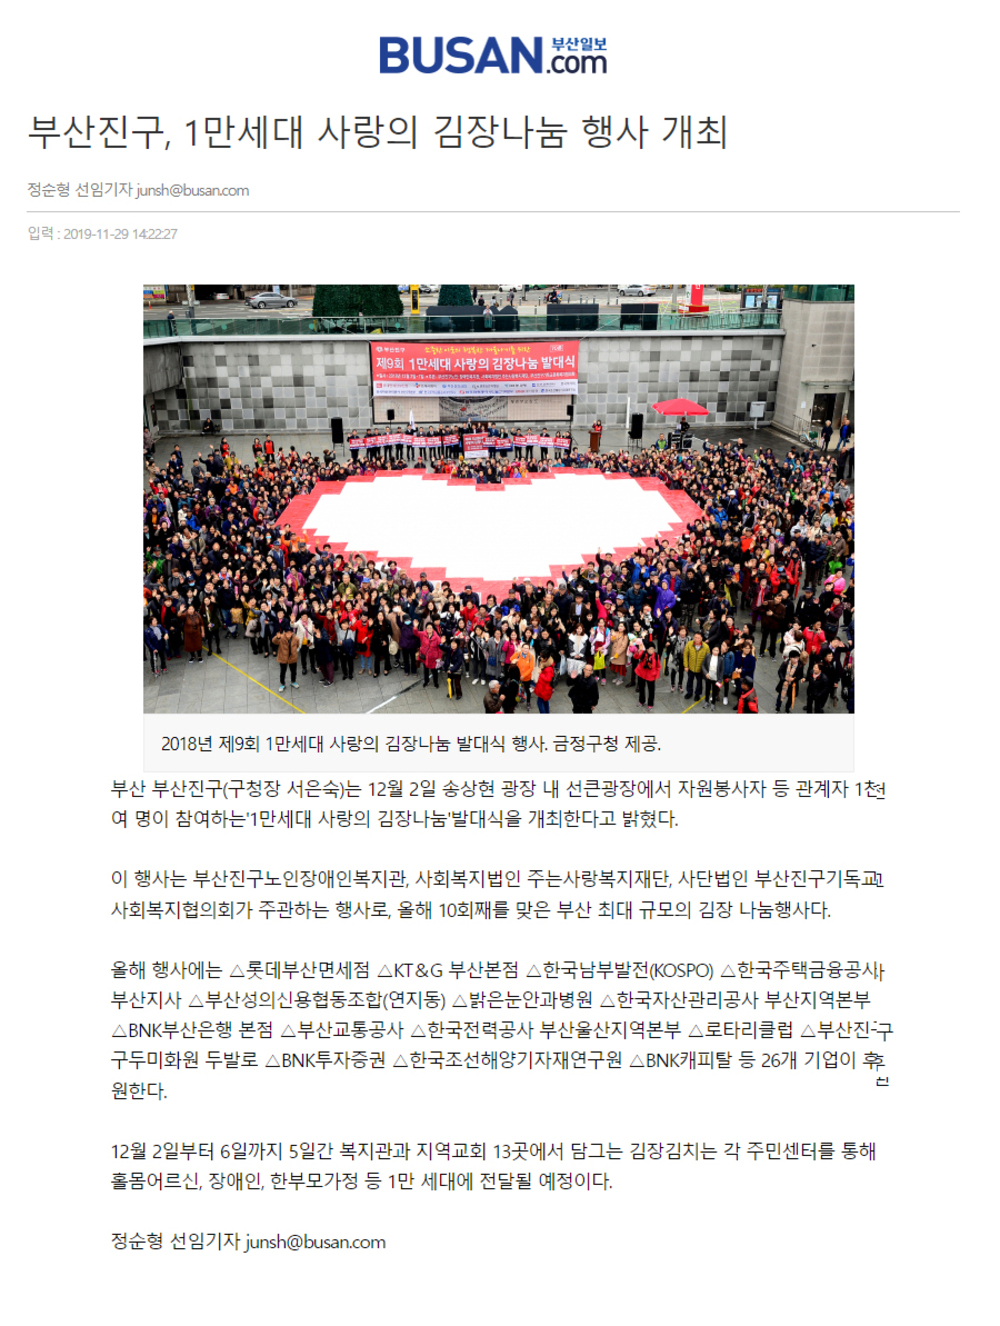 [부산일보] 부산진구, 1만세대 사랑의 김장나눔 행사 개최.jpg